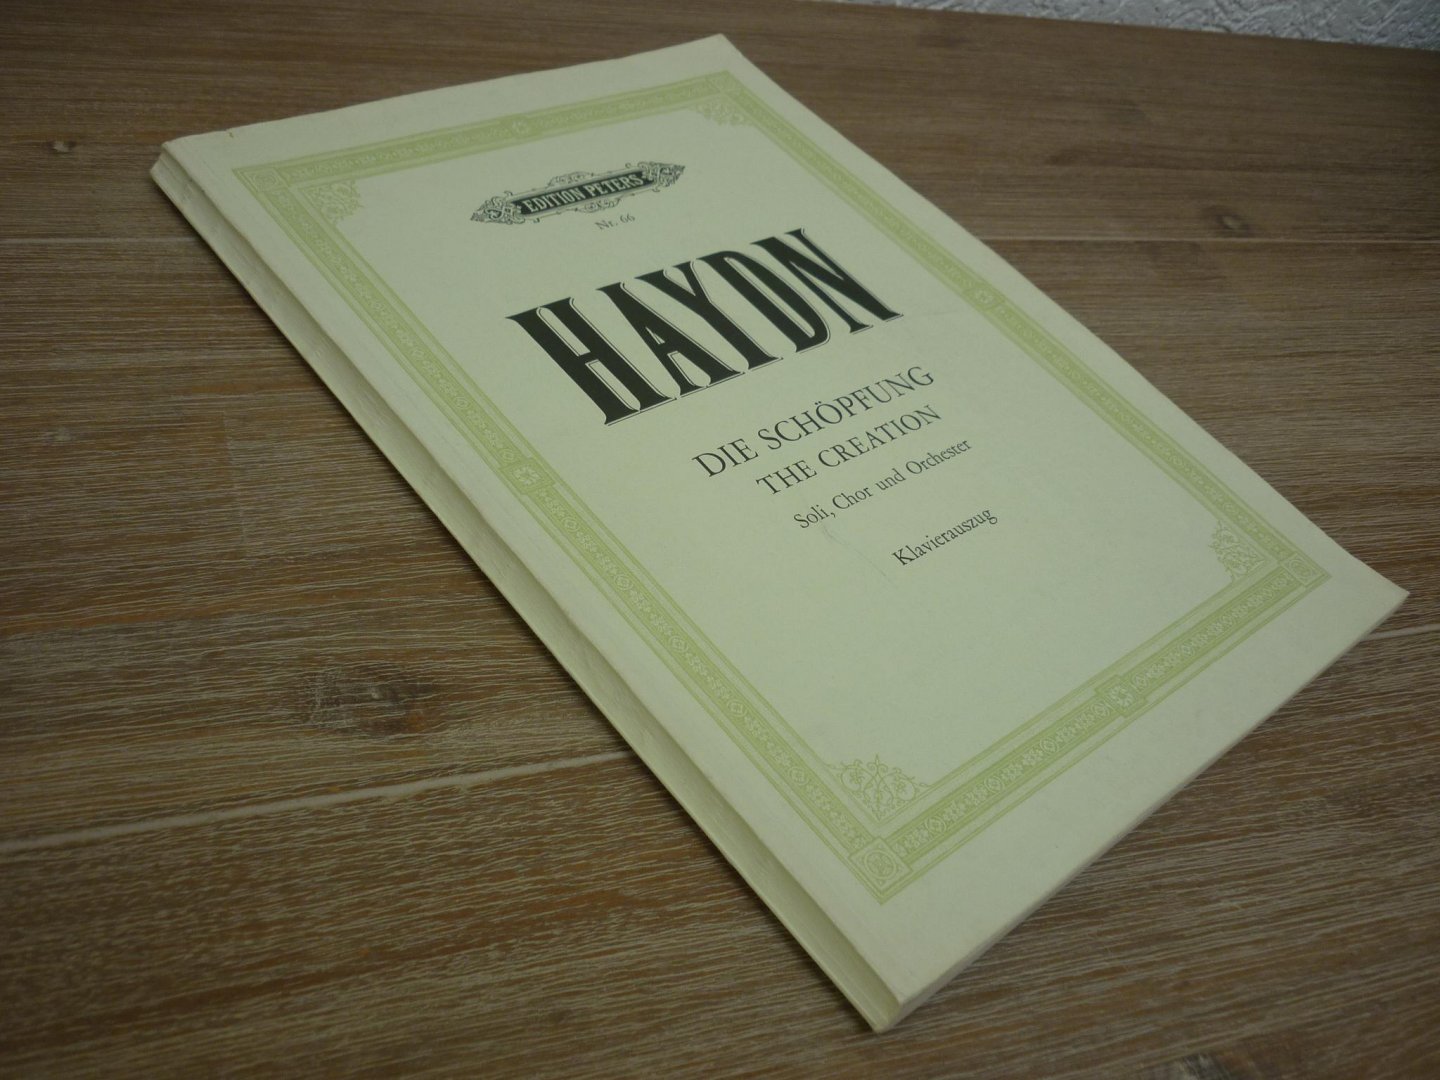 Haydn; Franz Joseph (1732-1809) - Die Schopfung; Oratorium; Soli, Chor und Orchester; Klavierauszug (Kurt Soldan)